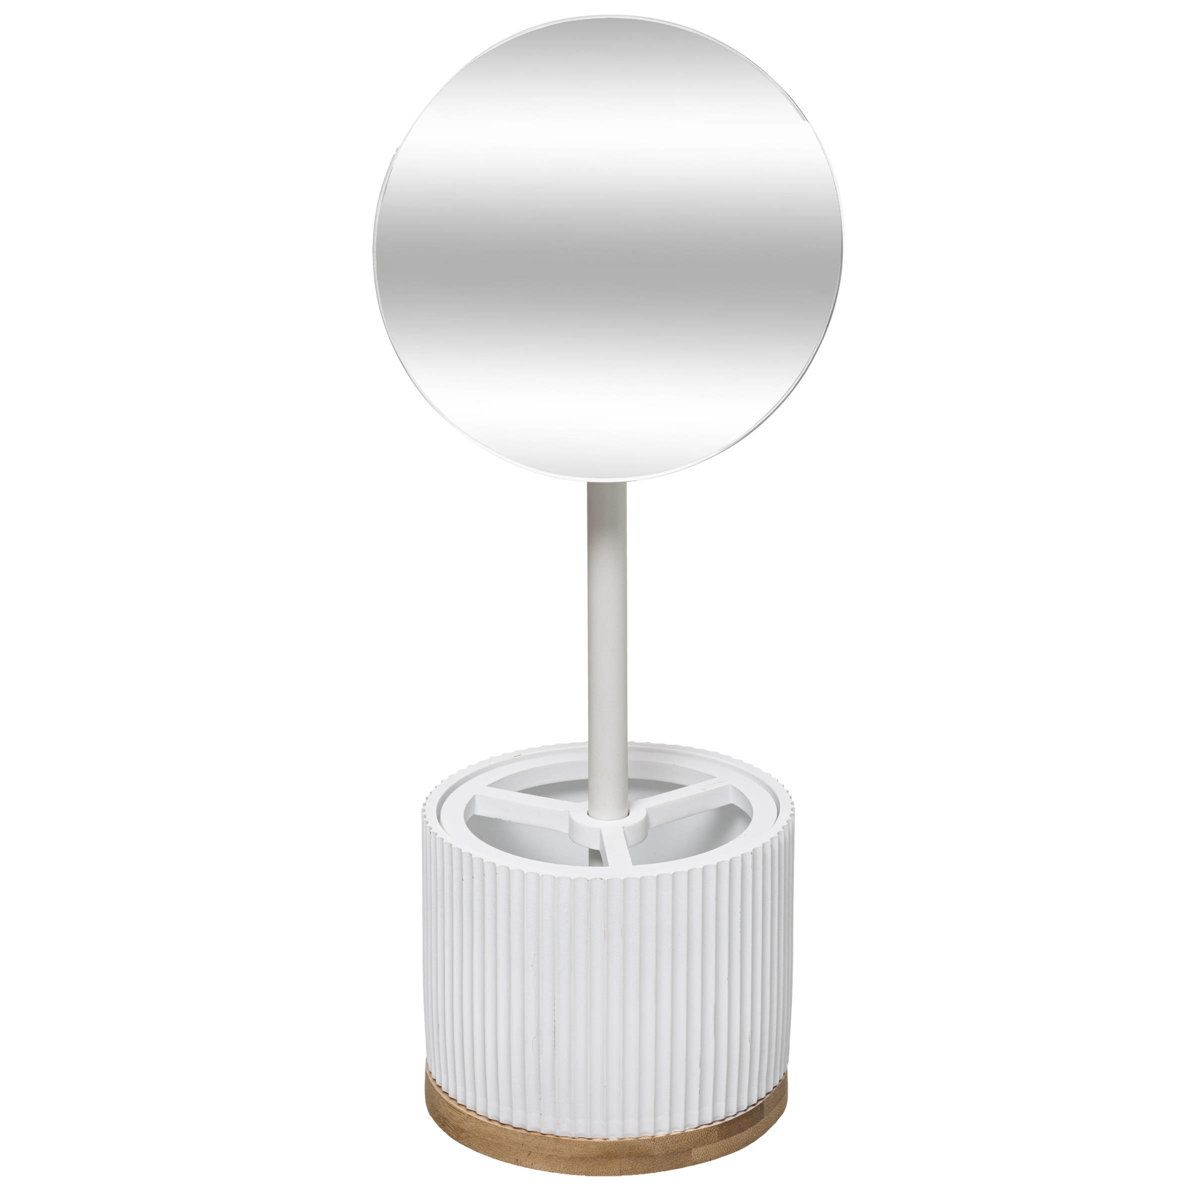 5five Simply Smart Kosmetické zrcadlo MODERN s organizérem na šperky, 35 cm, bílé - EDAXO.CZ s.r.o.